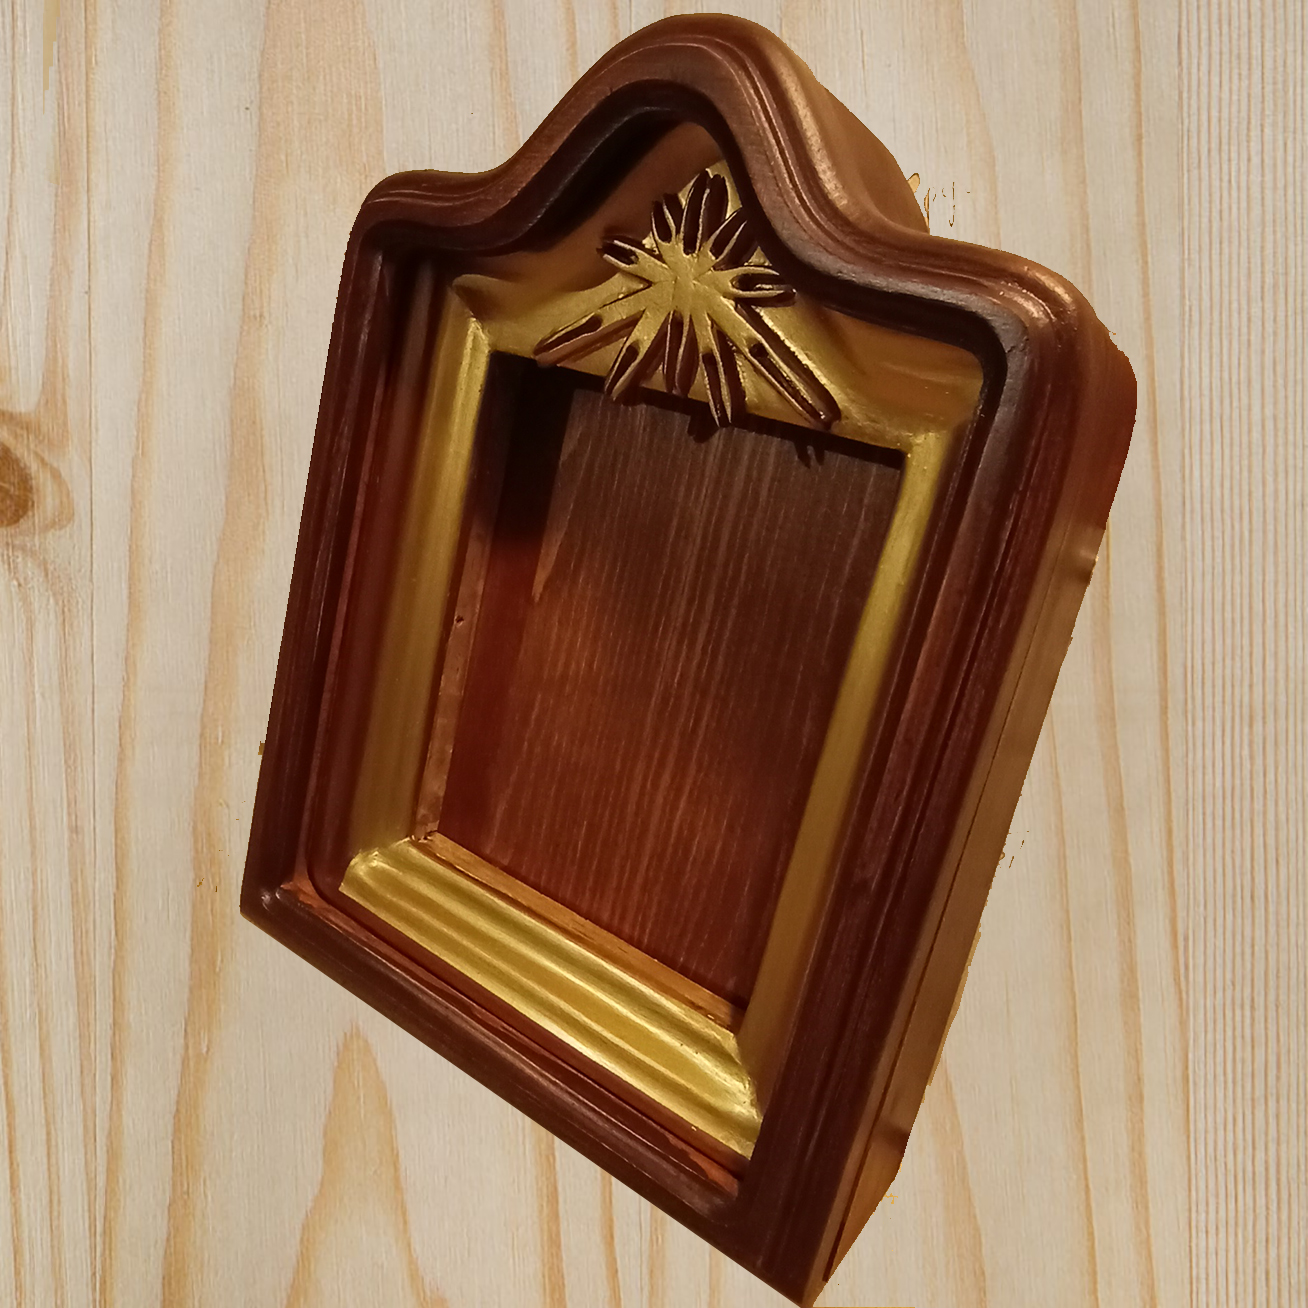 Киот малый резной для иконы, со стеклом в дверце, и фурнитурой под золото для иконы 15х20 см